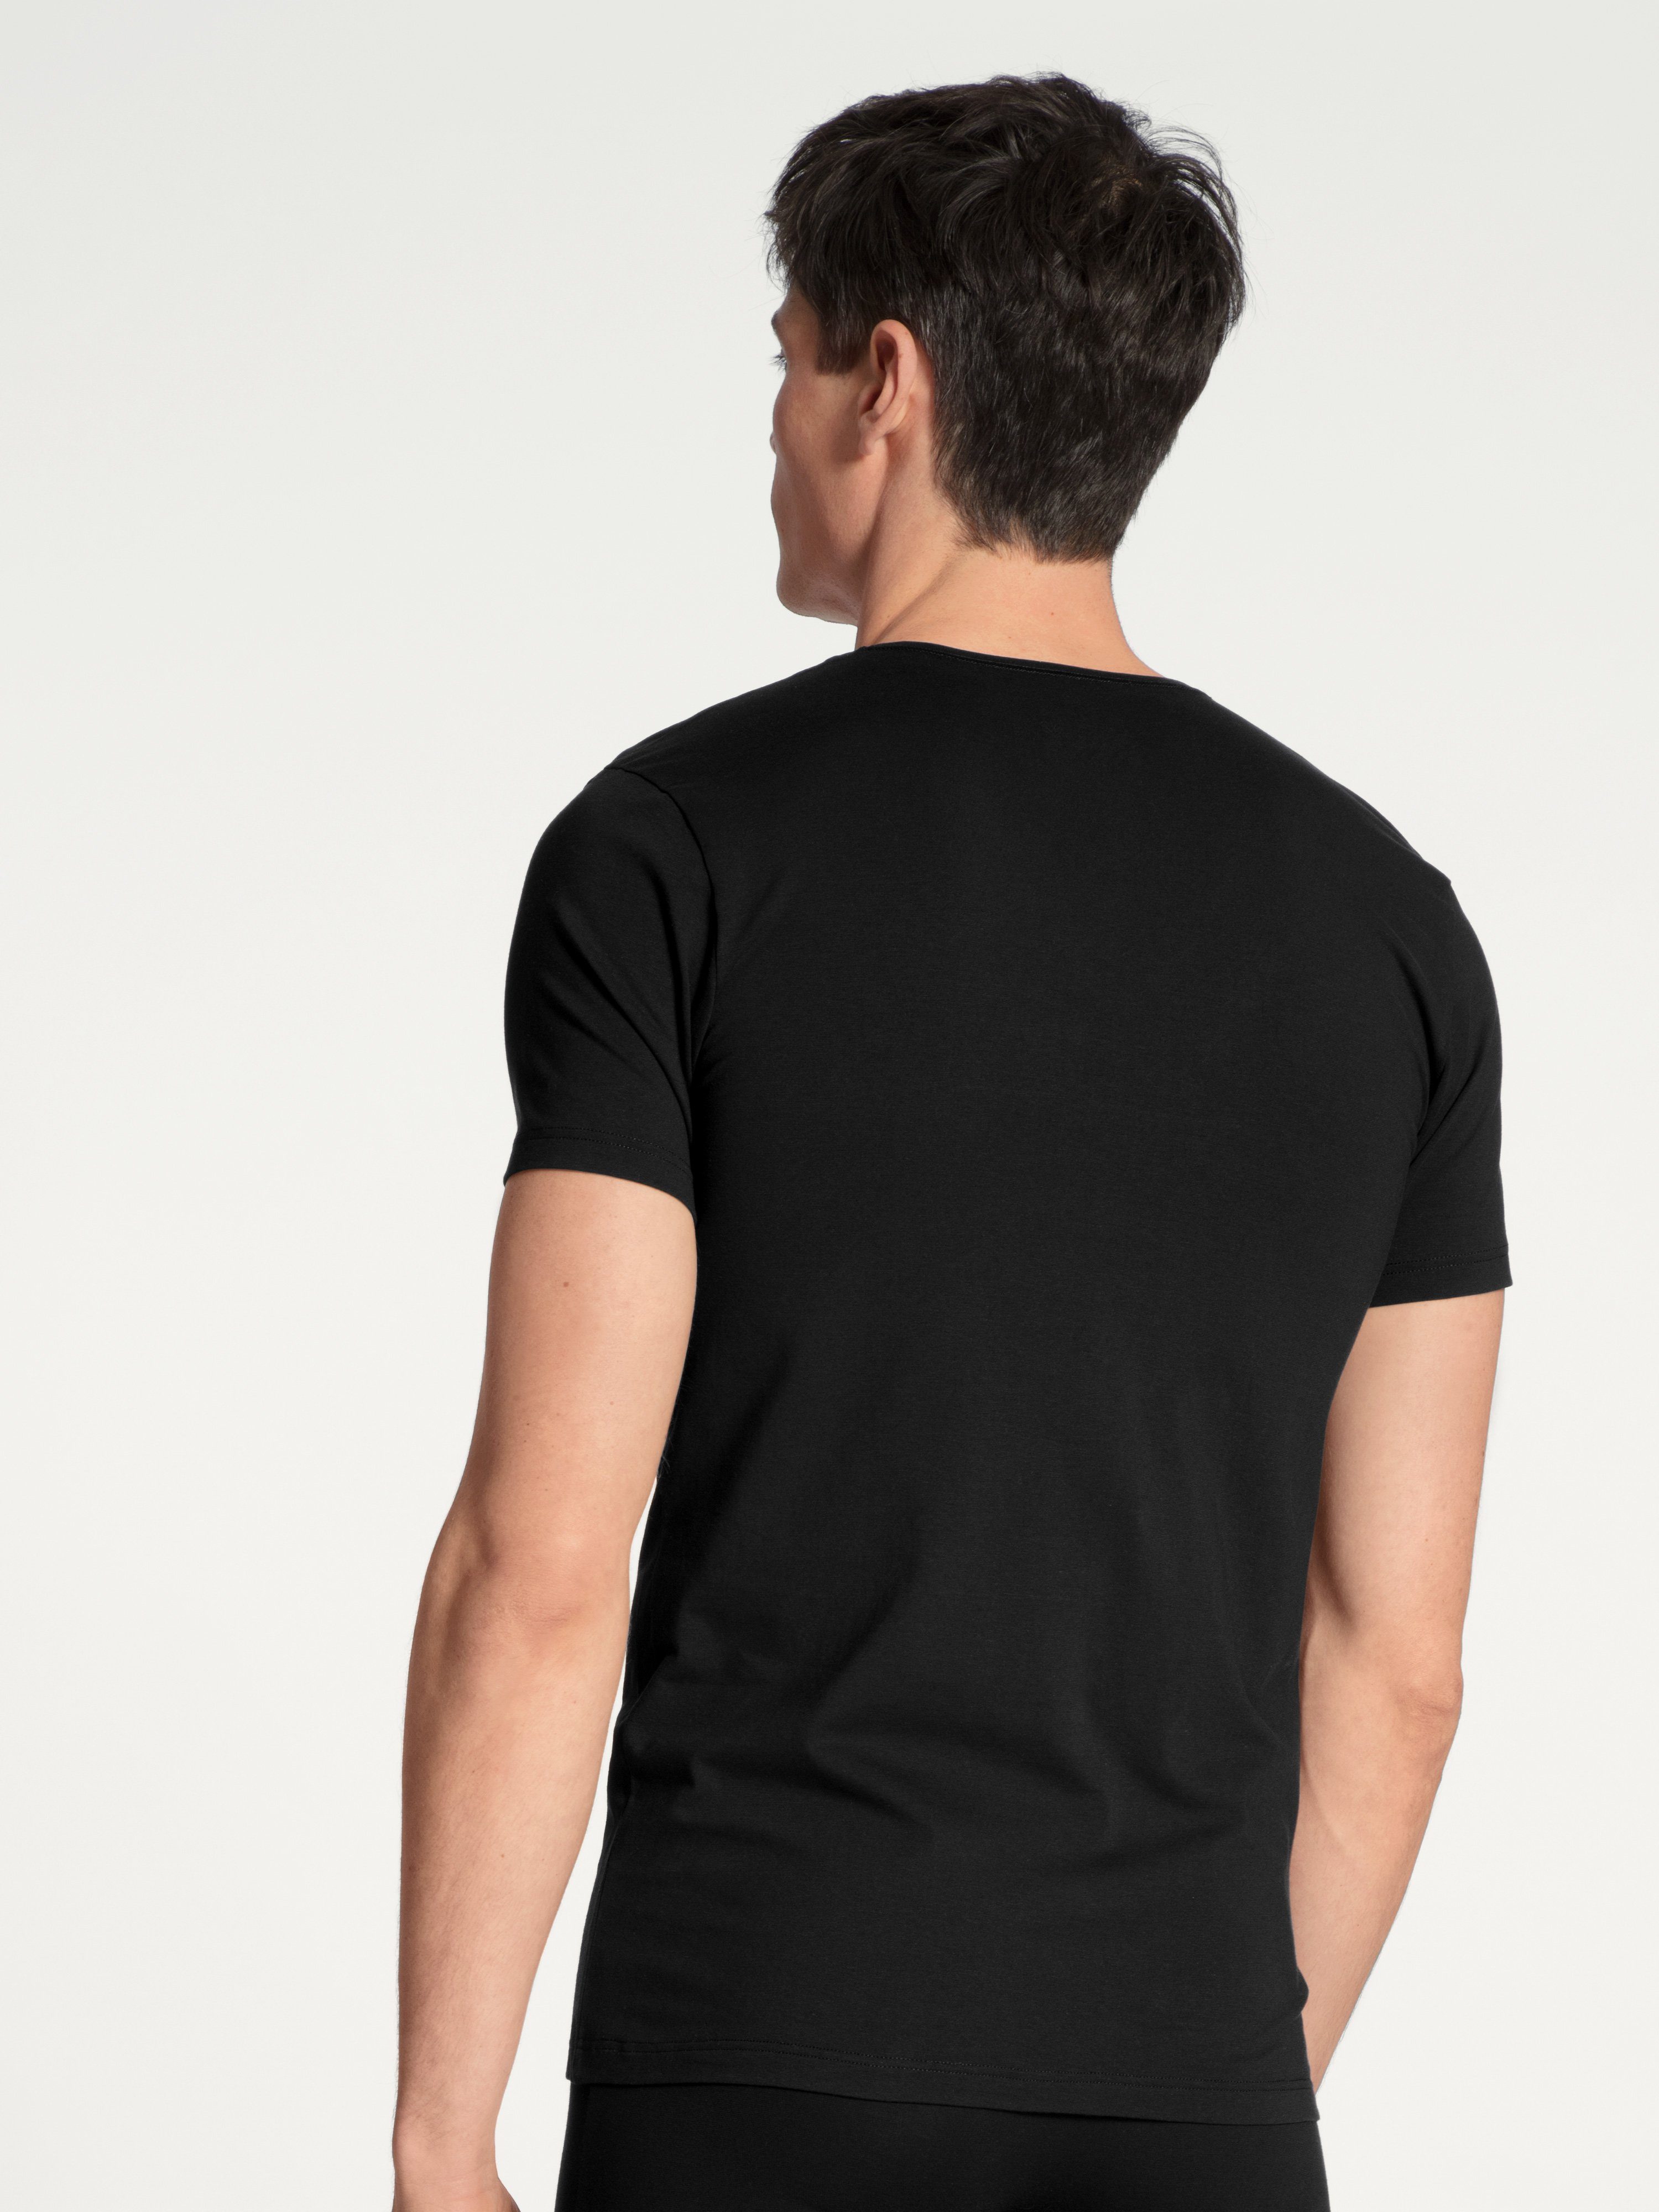 Code CALIDA perfekter Passform schwarz V-Ausschnitt mit und T-Shirt Cotton